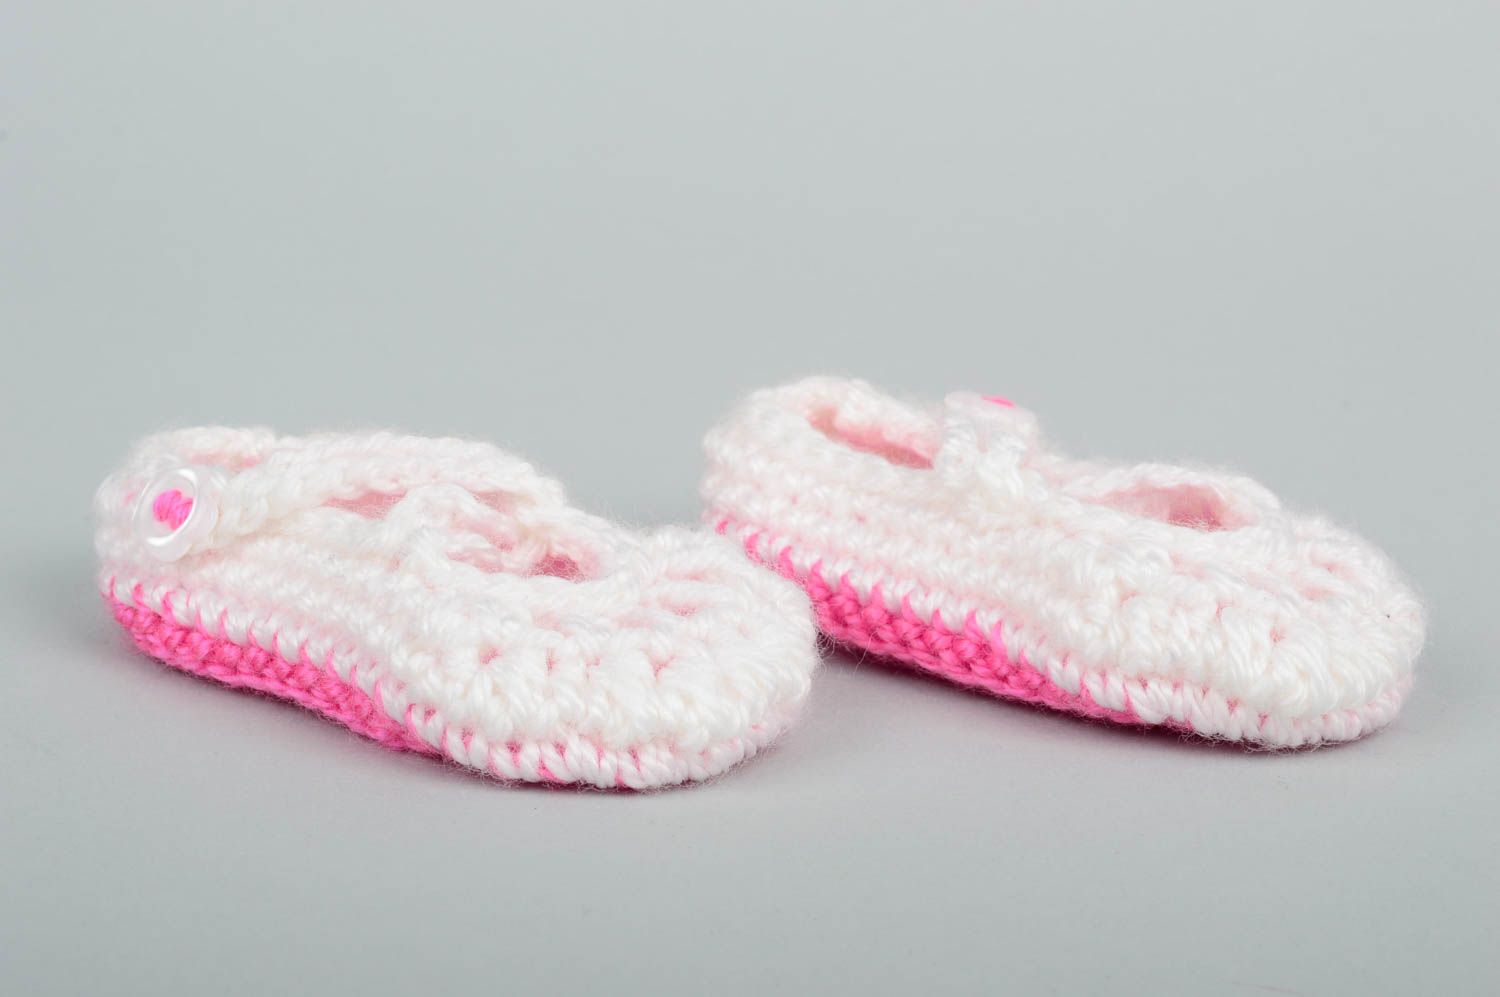 Chaussons bébé faits main Chaussures bébé au crochet blanc rose Vêtement bébé photo 3